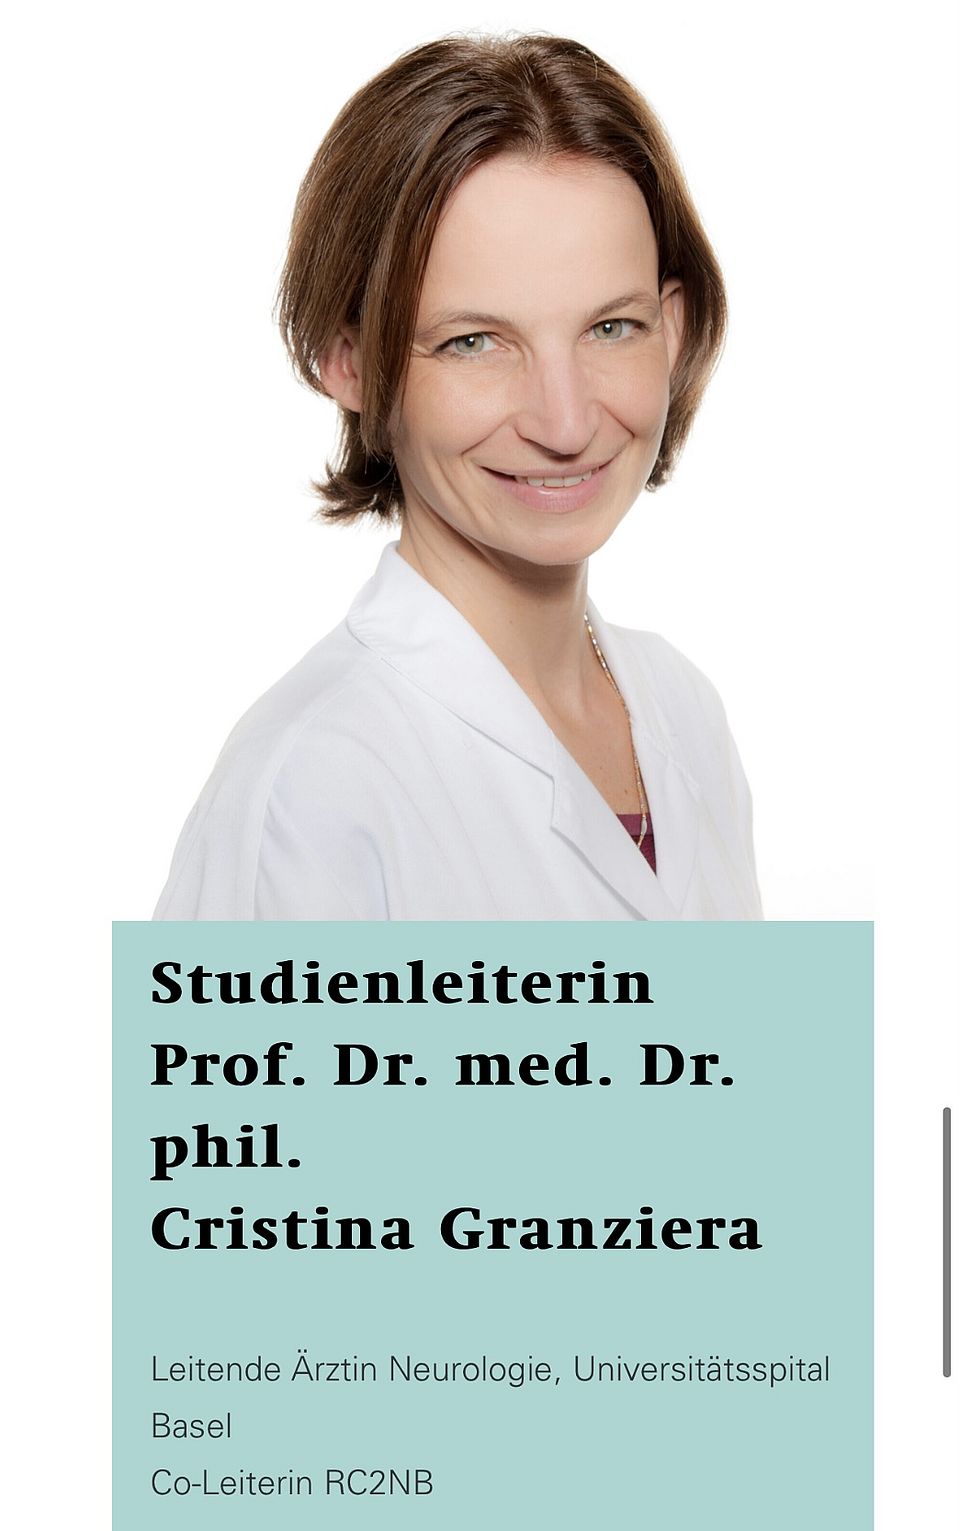 Prof. Cristina Granziera